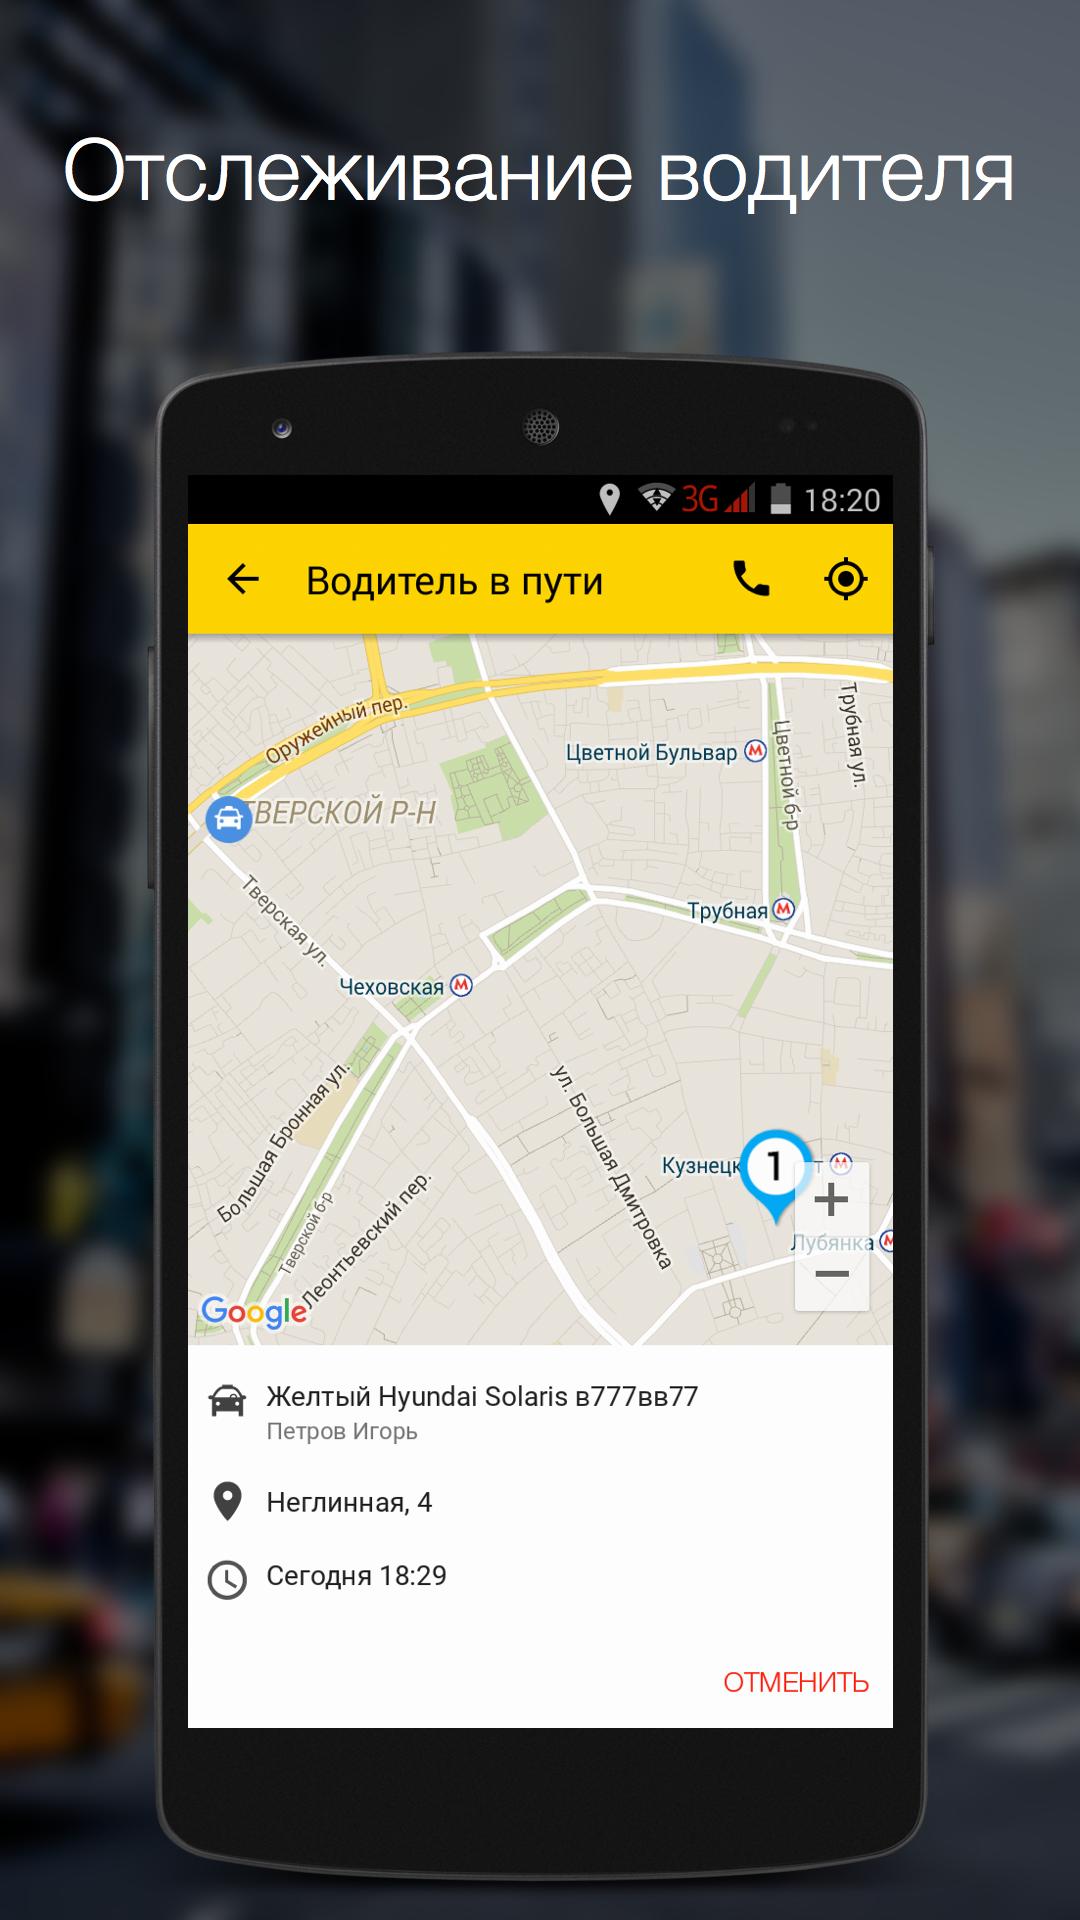 Обновить приложение такси. Реклама приложения такси. Такси приложение для водителей. Приложение такси андроид. Такси клиентское приложения.